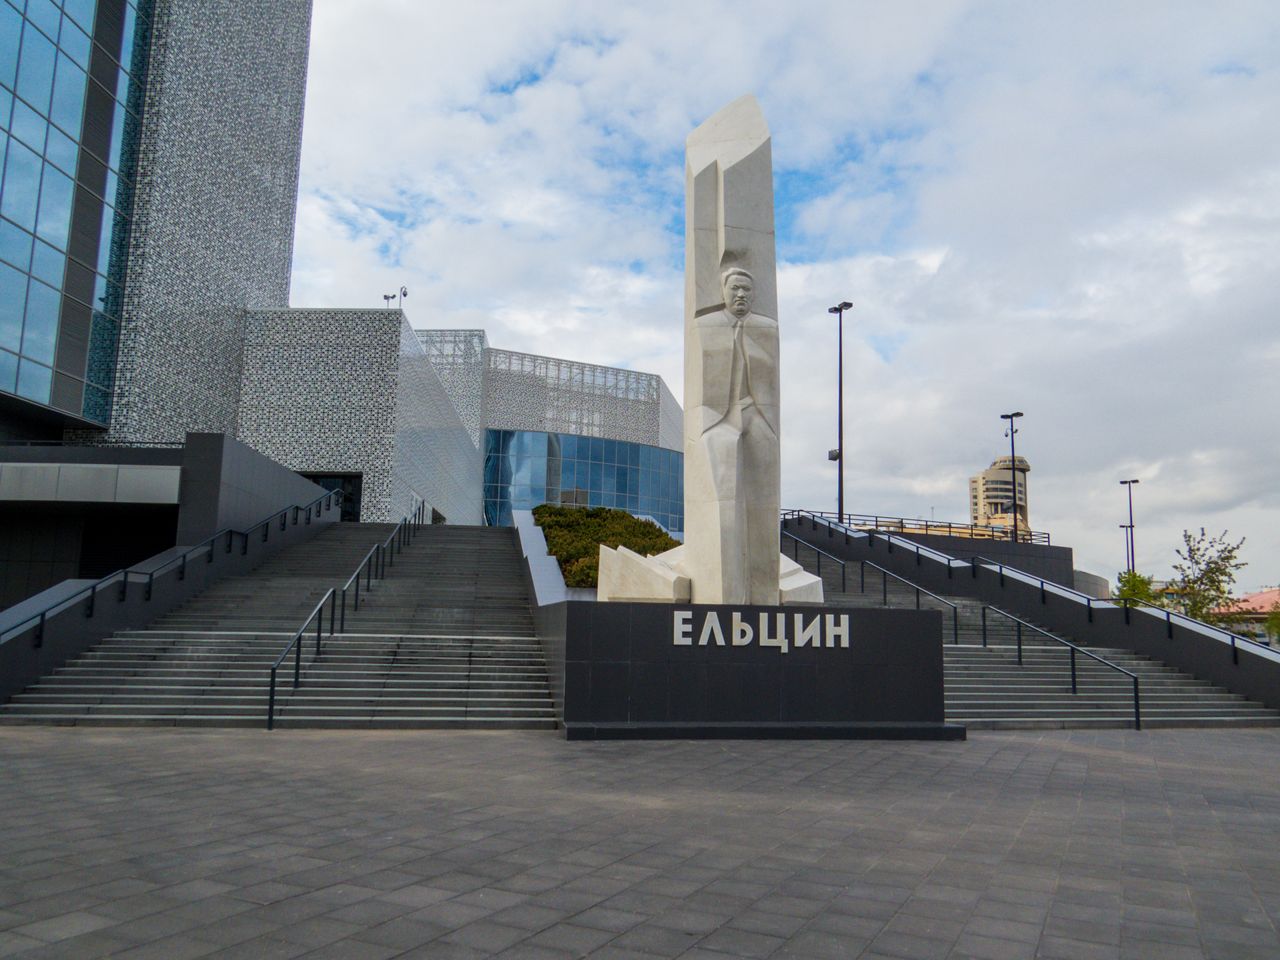 Ознакомительная прогулка с визитом в Ельцин-центр | Цена 6700₽, отзывы, описание экскурсии